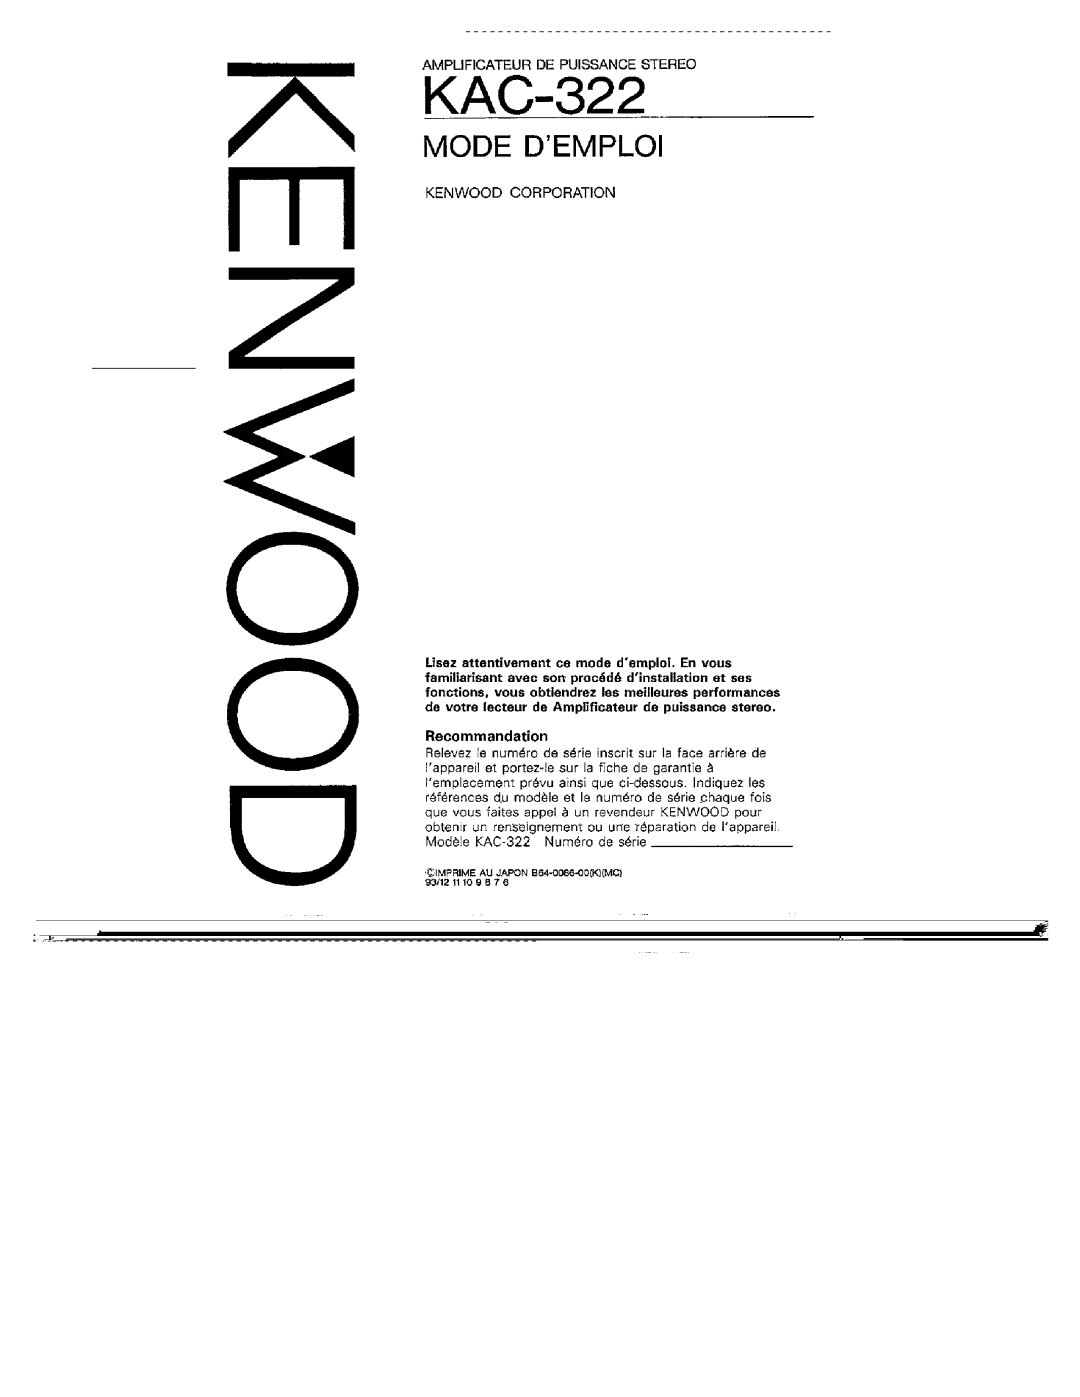 Kenwood KAC-322 manual 